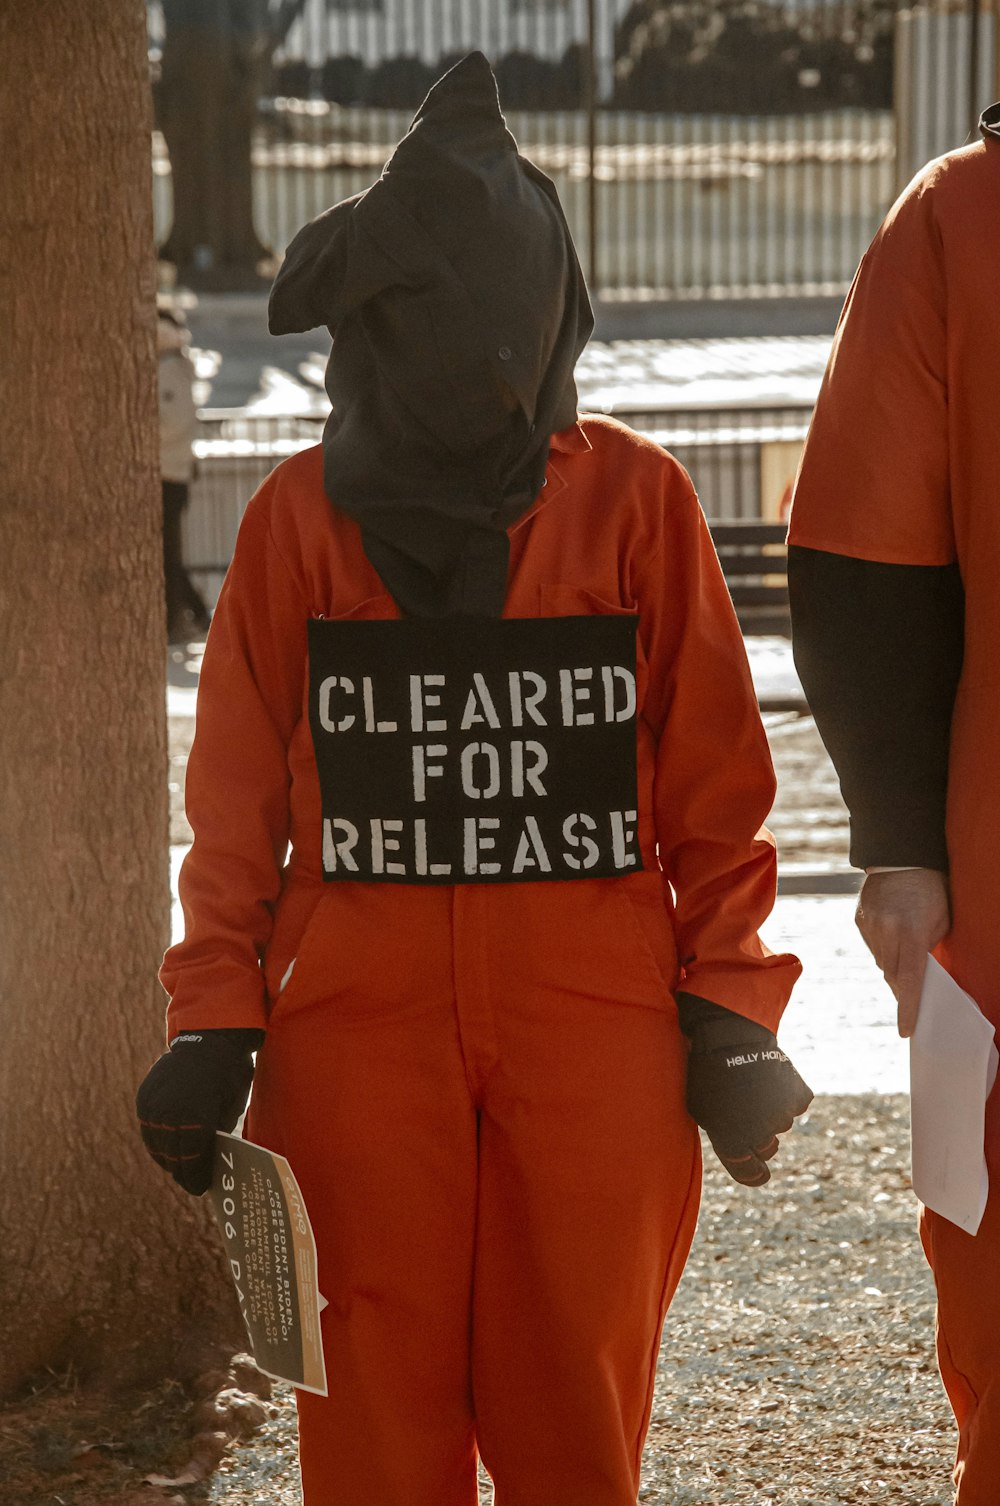 Deux personnes en combinaison orange avec une pancarte indiquant qu’elles ont été autorisées à être libérées